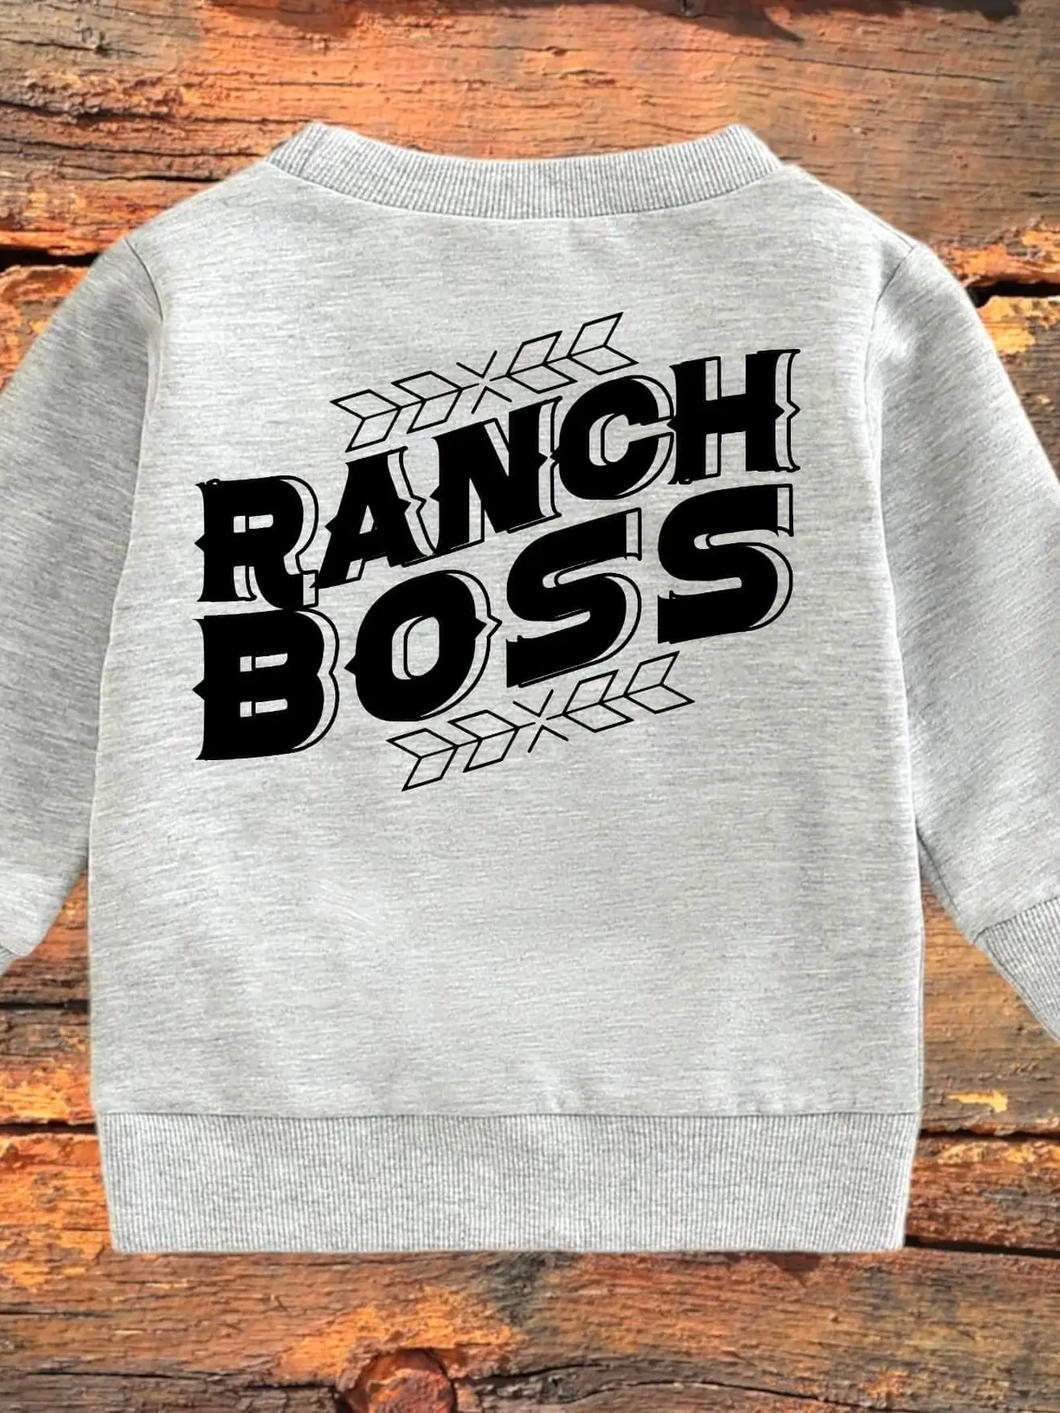 Kids Crew - Ranch Boss